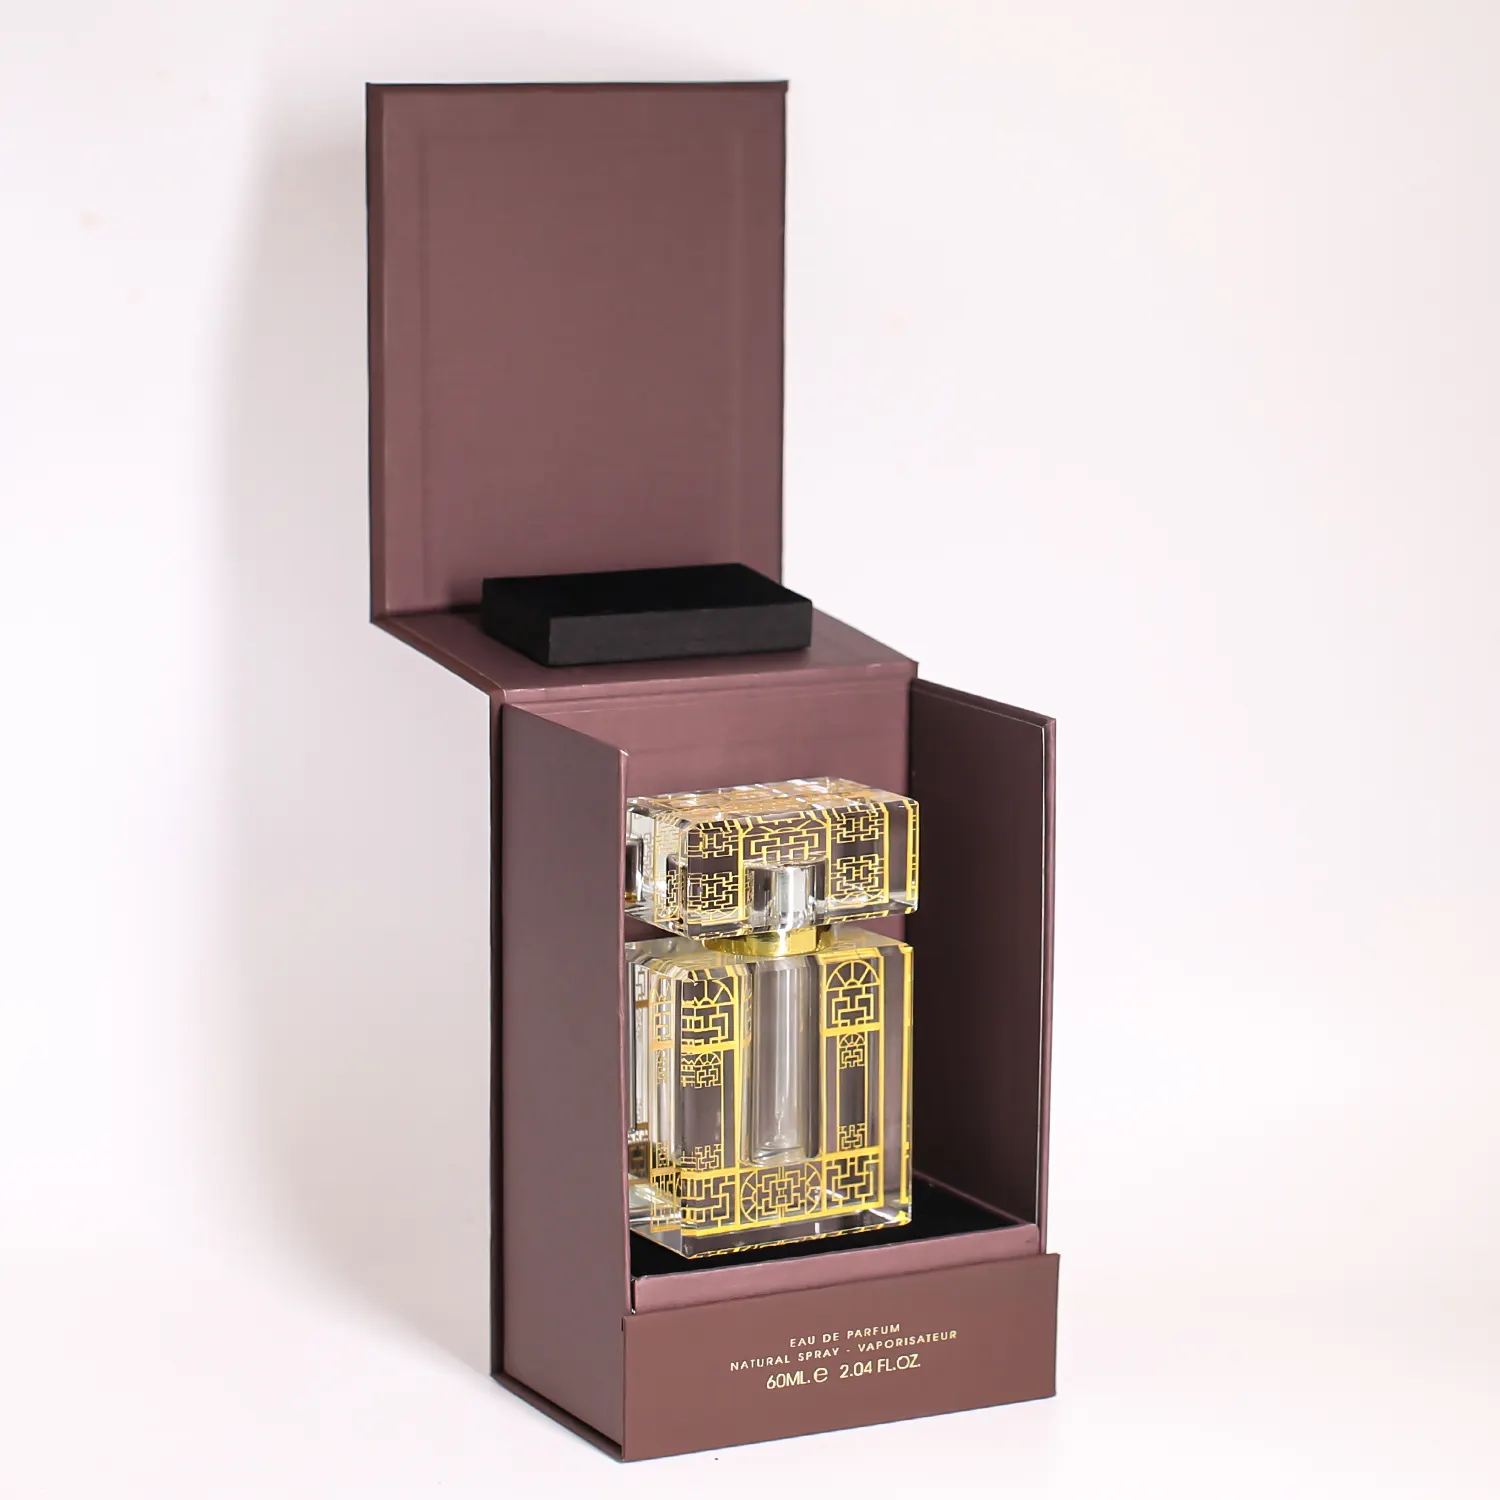 Rifornimento di fabbrica di lusso logo personalizzato Design cartone atomizzatore cosmetico confezione di olio essenziale bottiglia di profumo regalo con scatola